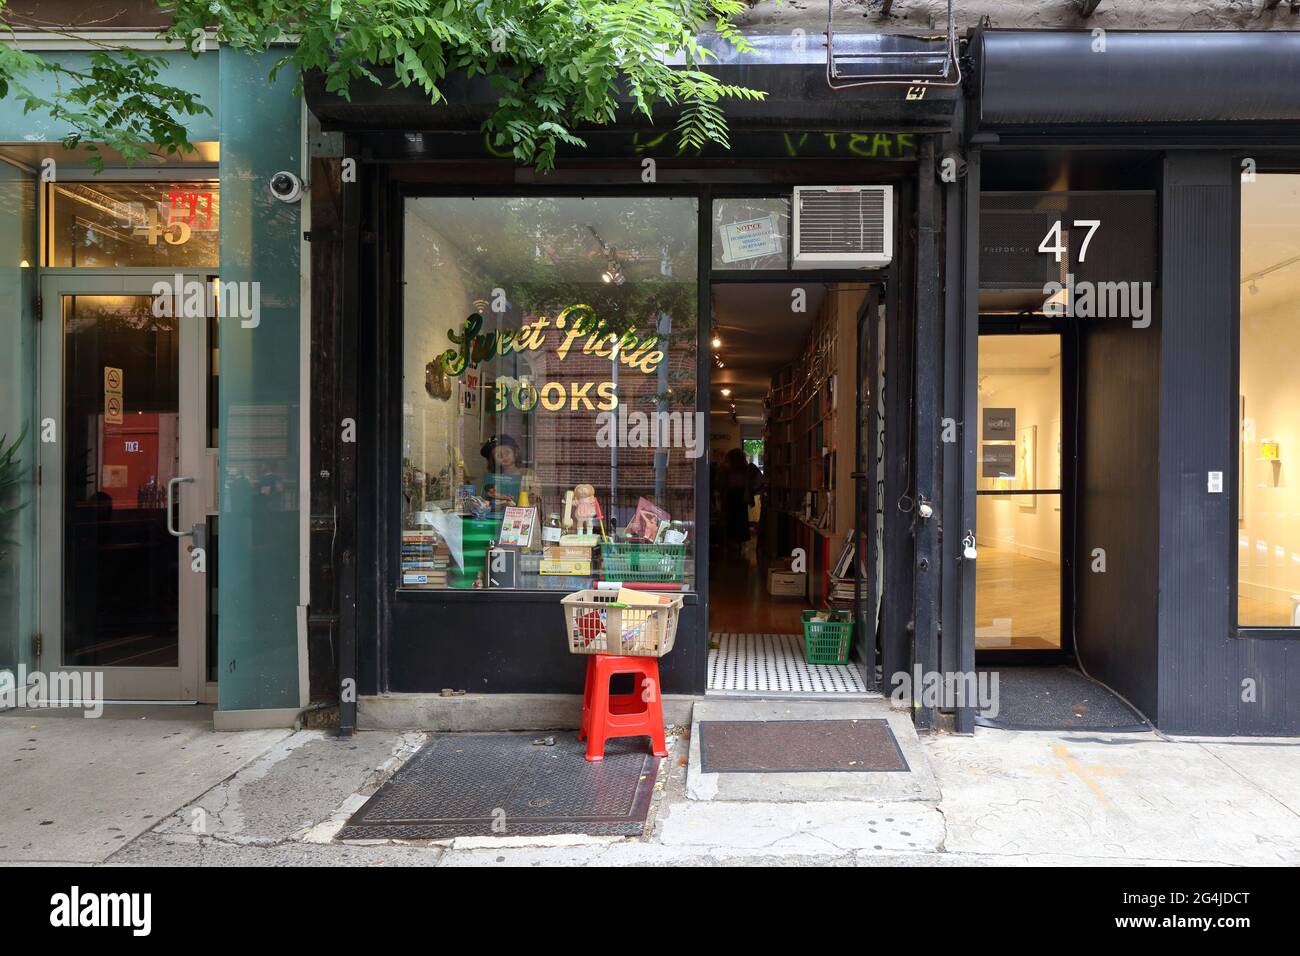 Sweet Pickle Books, 47 Orchard St, New York, NYC Schaufensterfoto eines gebrauchten Buchladens und Pickle-Ladens in Manhattans Lower East Side. Stockfoto